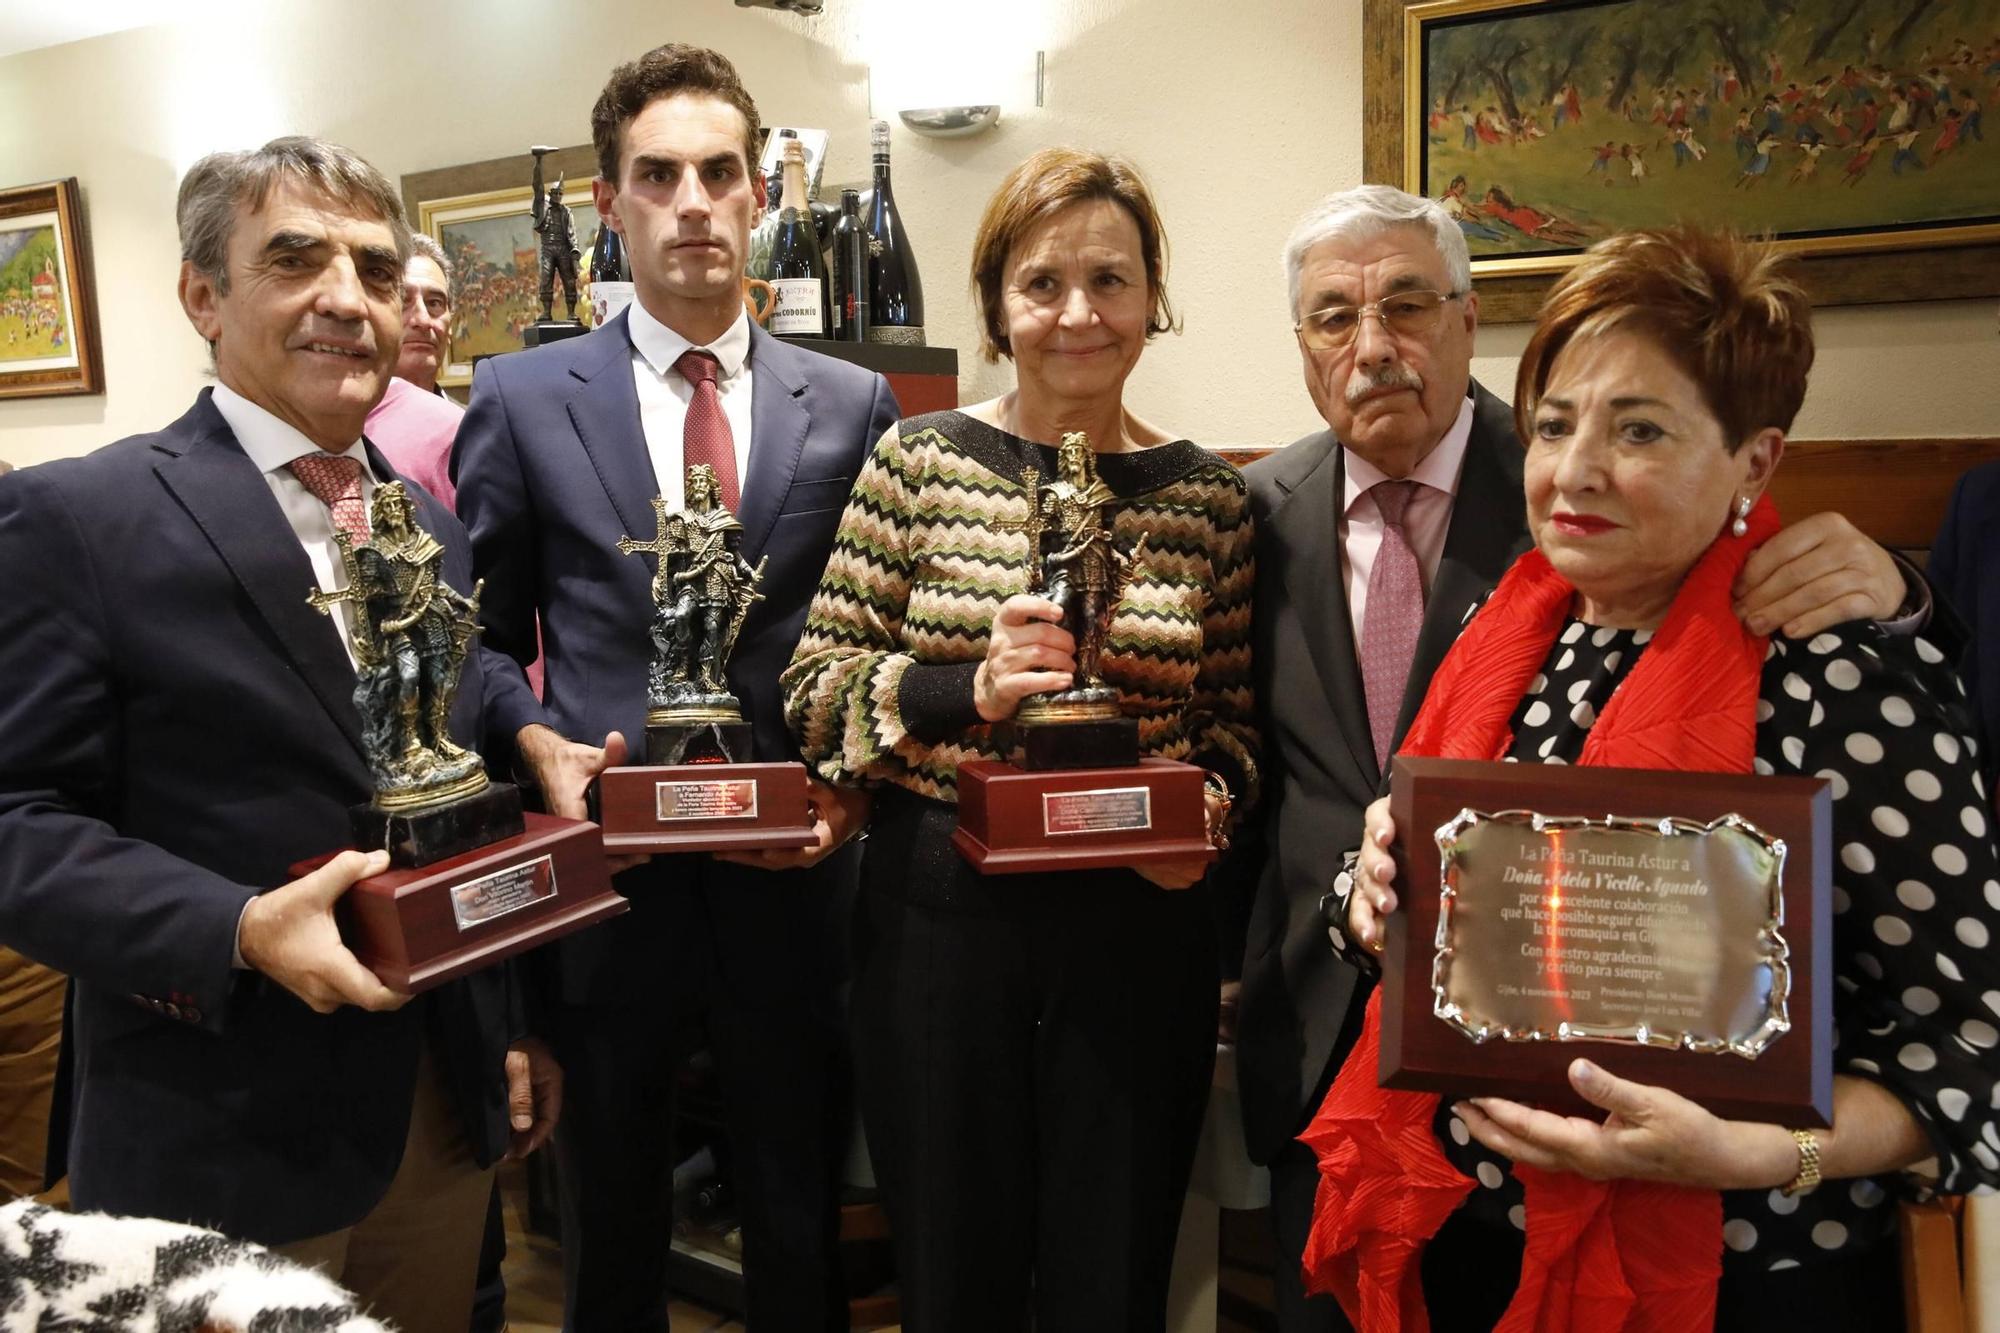 La entrega de premios de la Peña taurina Astur, en imágenes